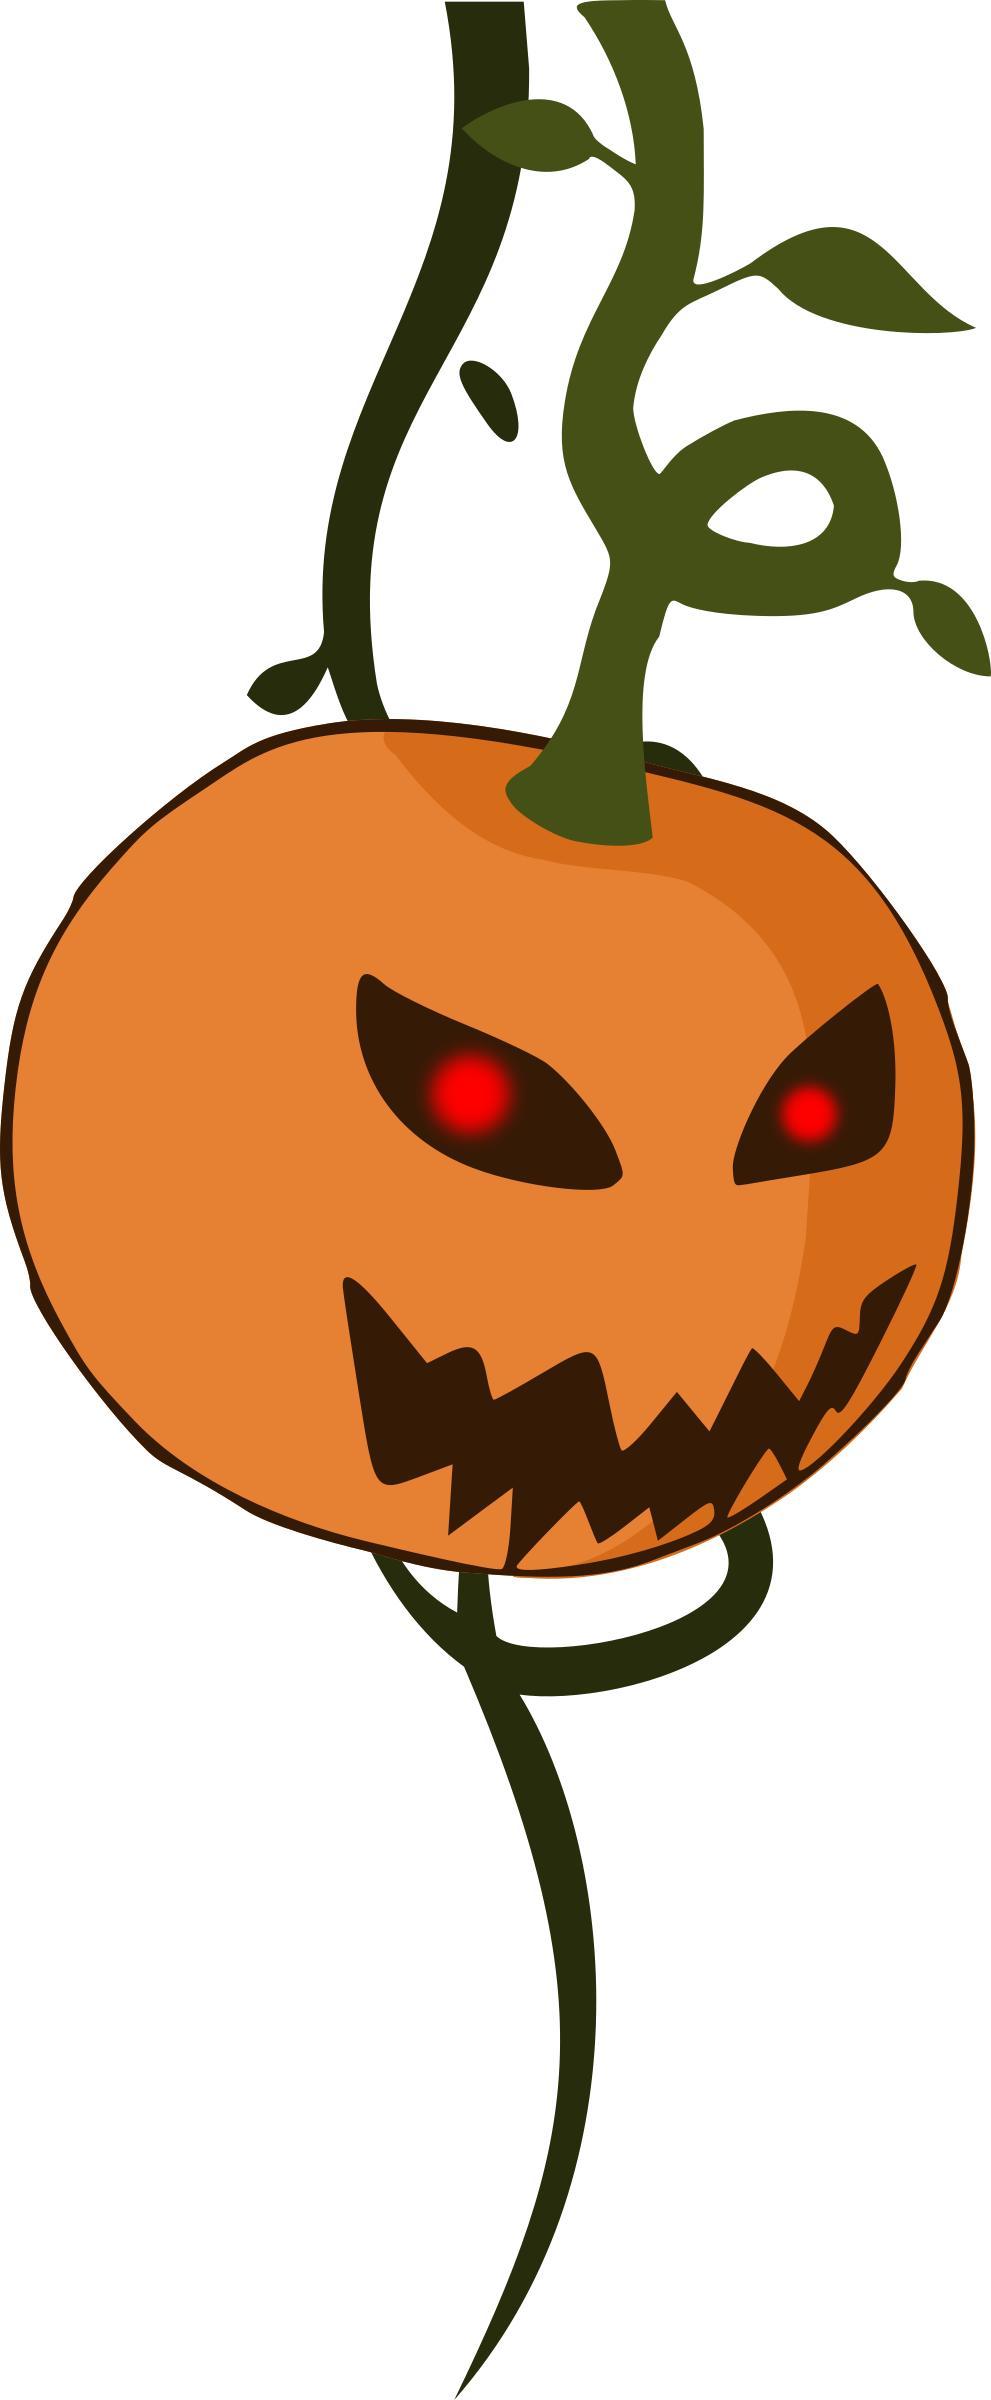 Cartoon jack-o'-lantern pumpkin png transparent